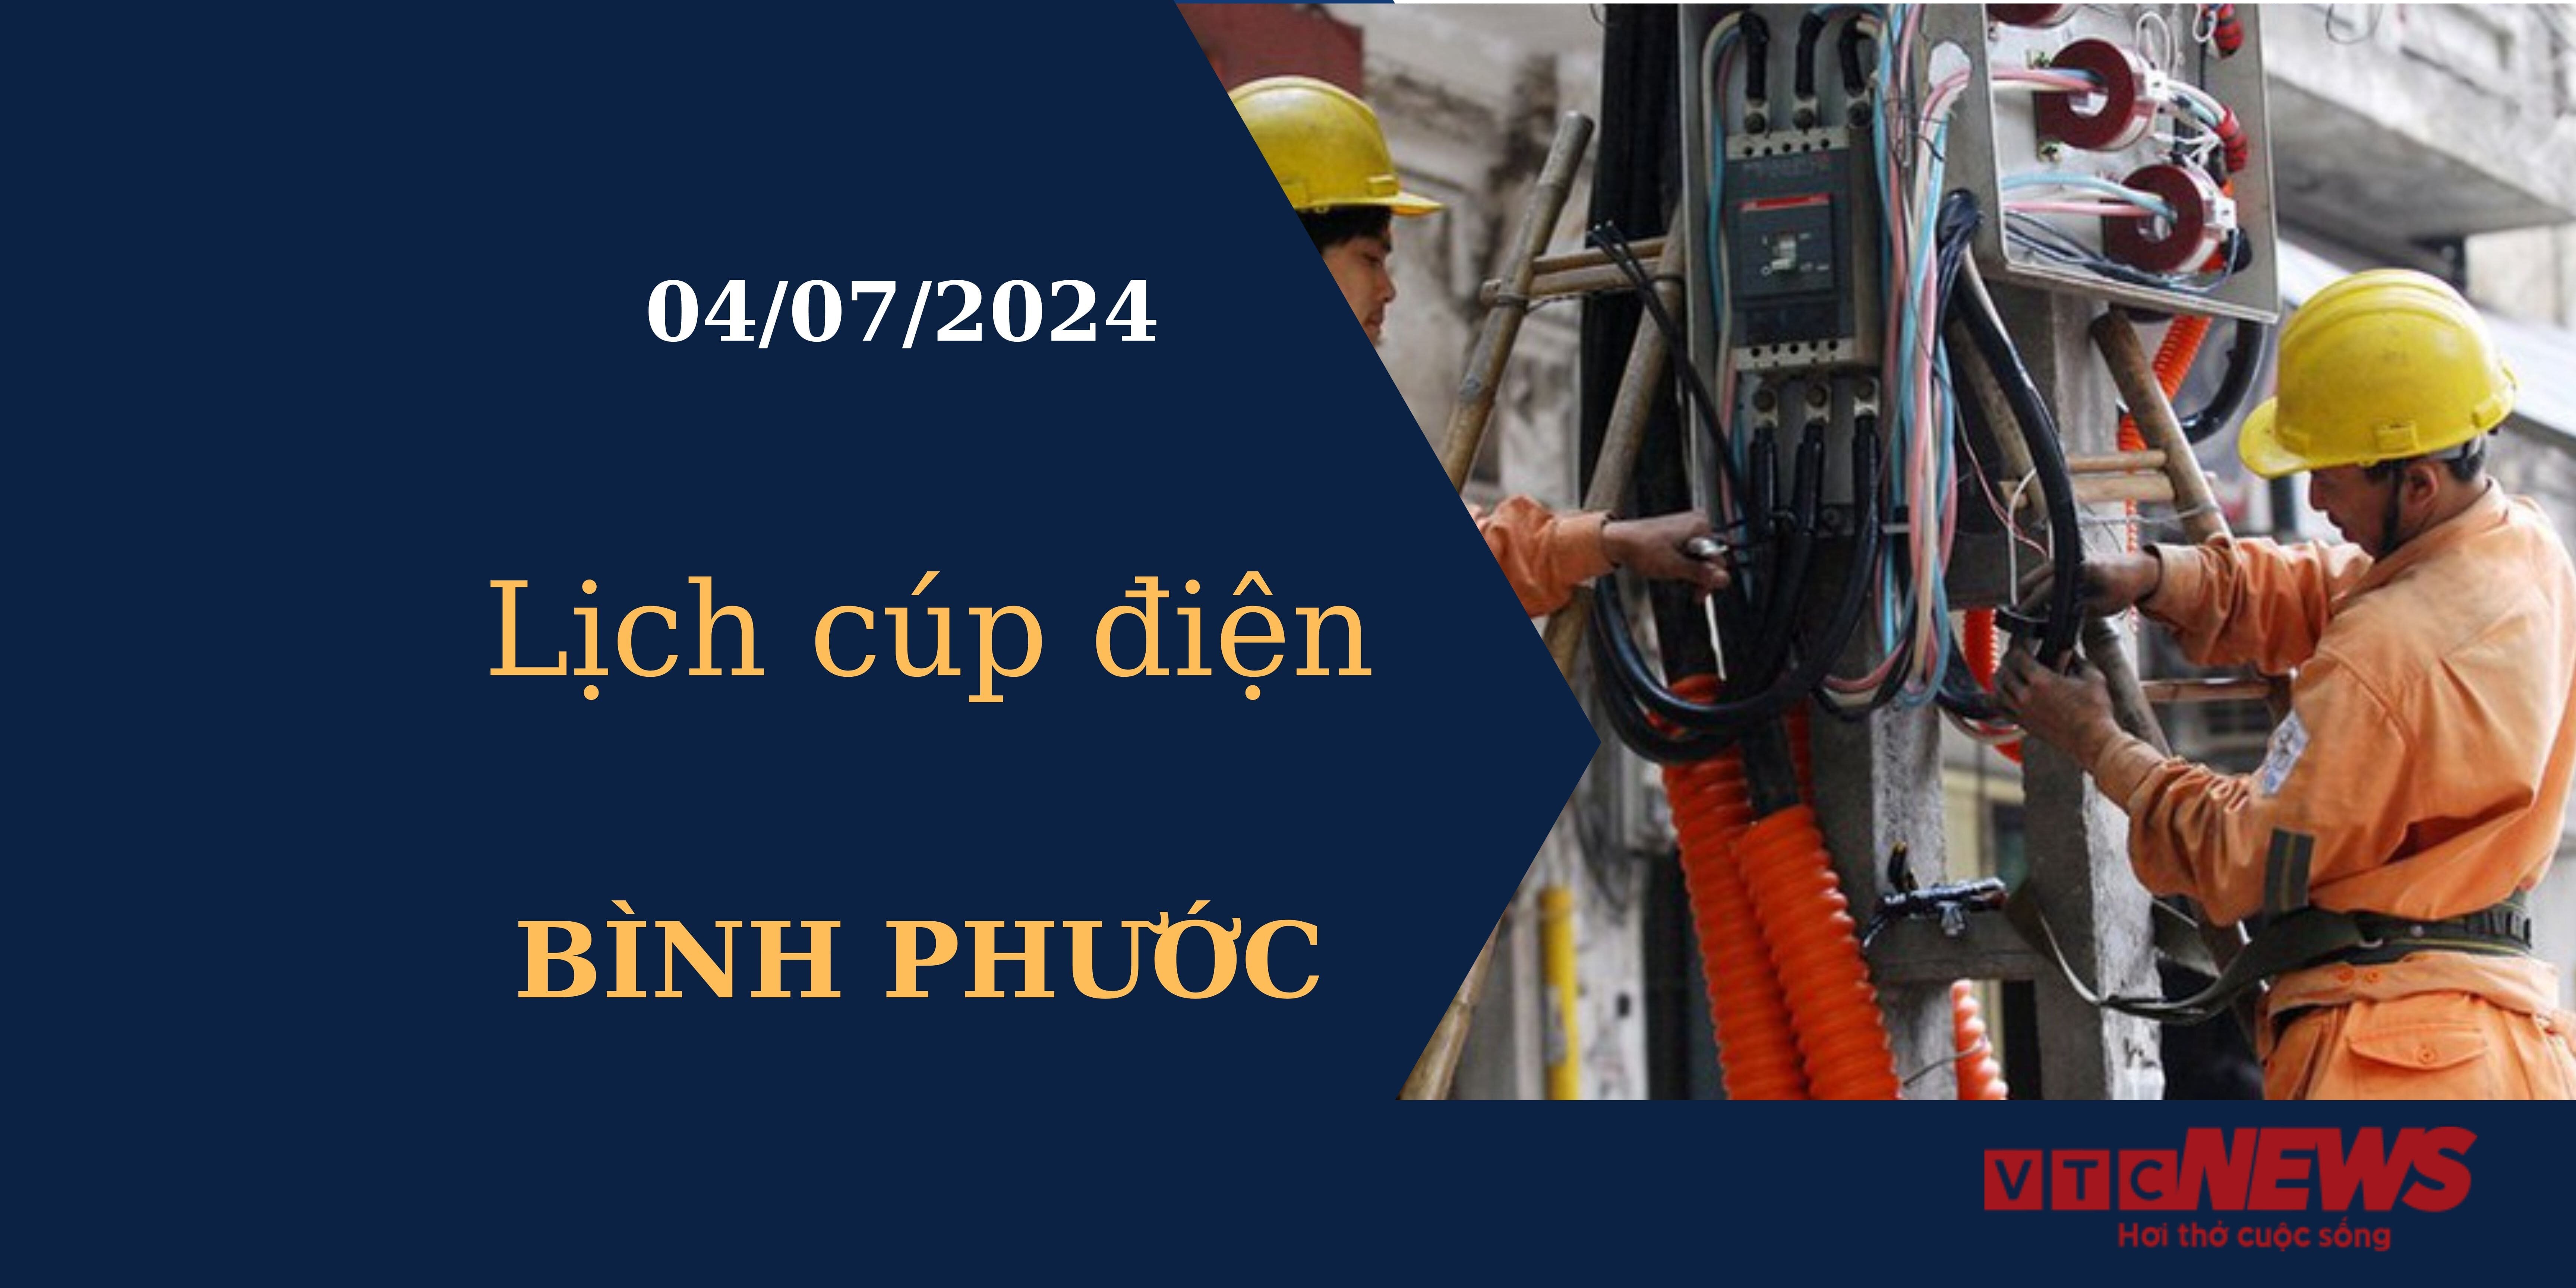 Lịch cúp điện hôm nay tại Bình Phước ngày 04/07/2024